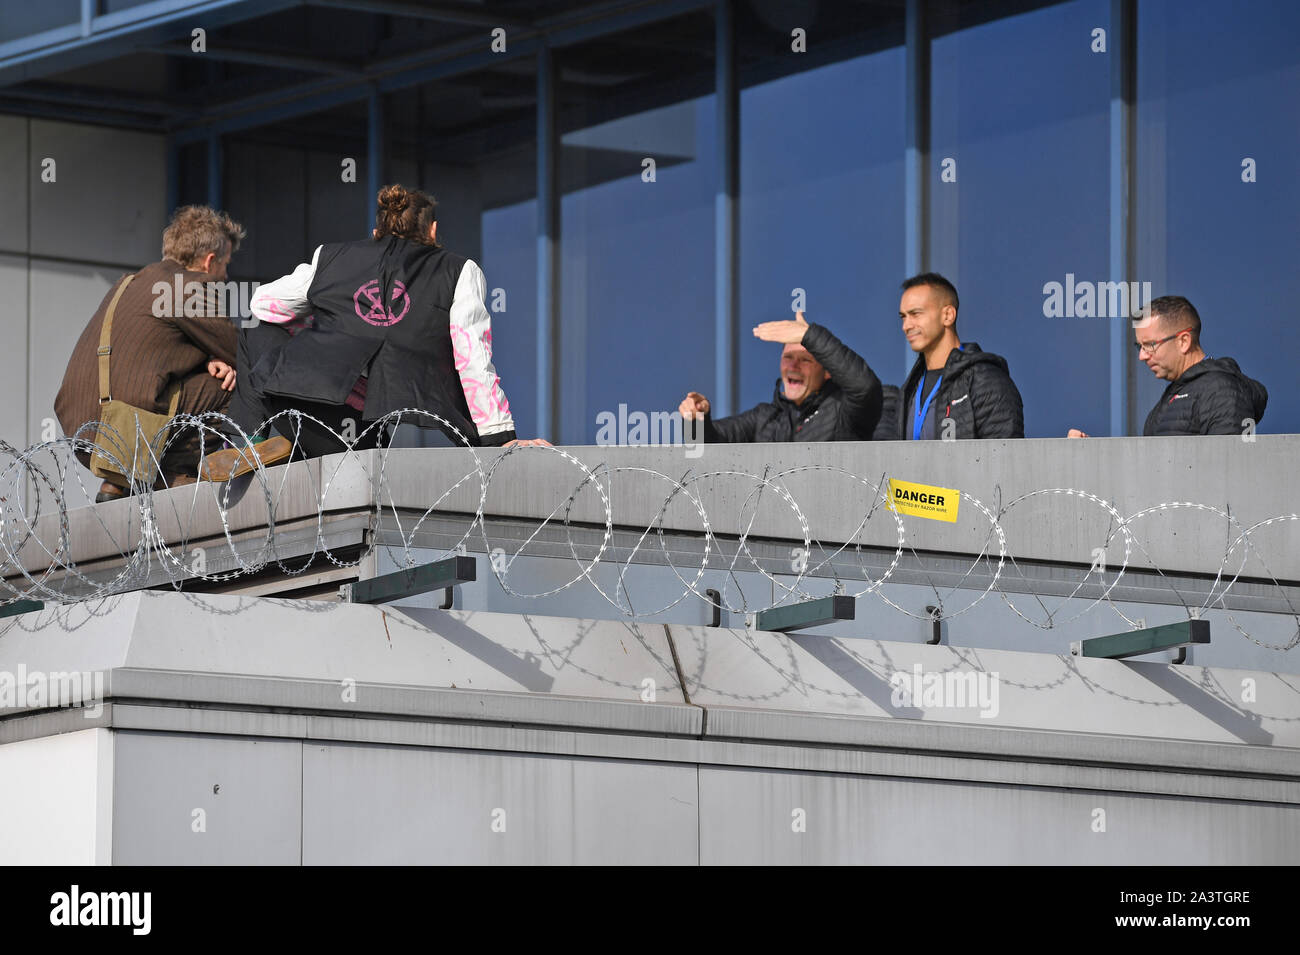 Les négociateurs tentent d'amadouer les manifestants vers le bas du toit de l'aéroport de la ville, Londres, au cours d'une rébellion d'extinction les changements climatiques de protestation. Banque D'Images